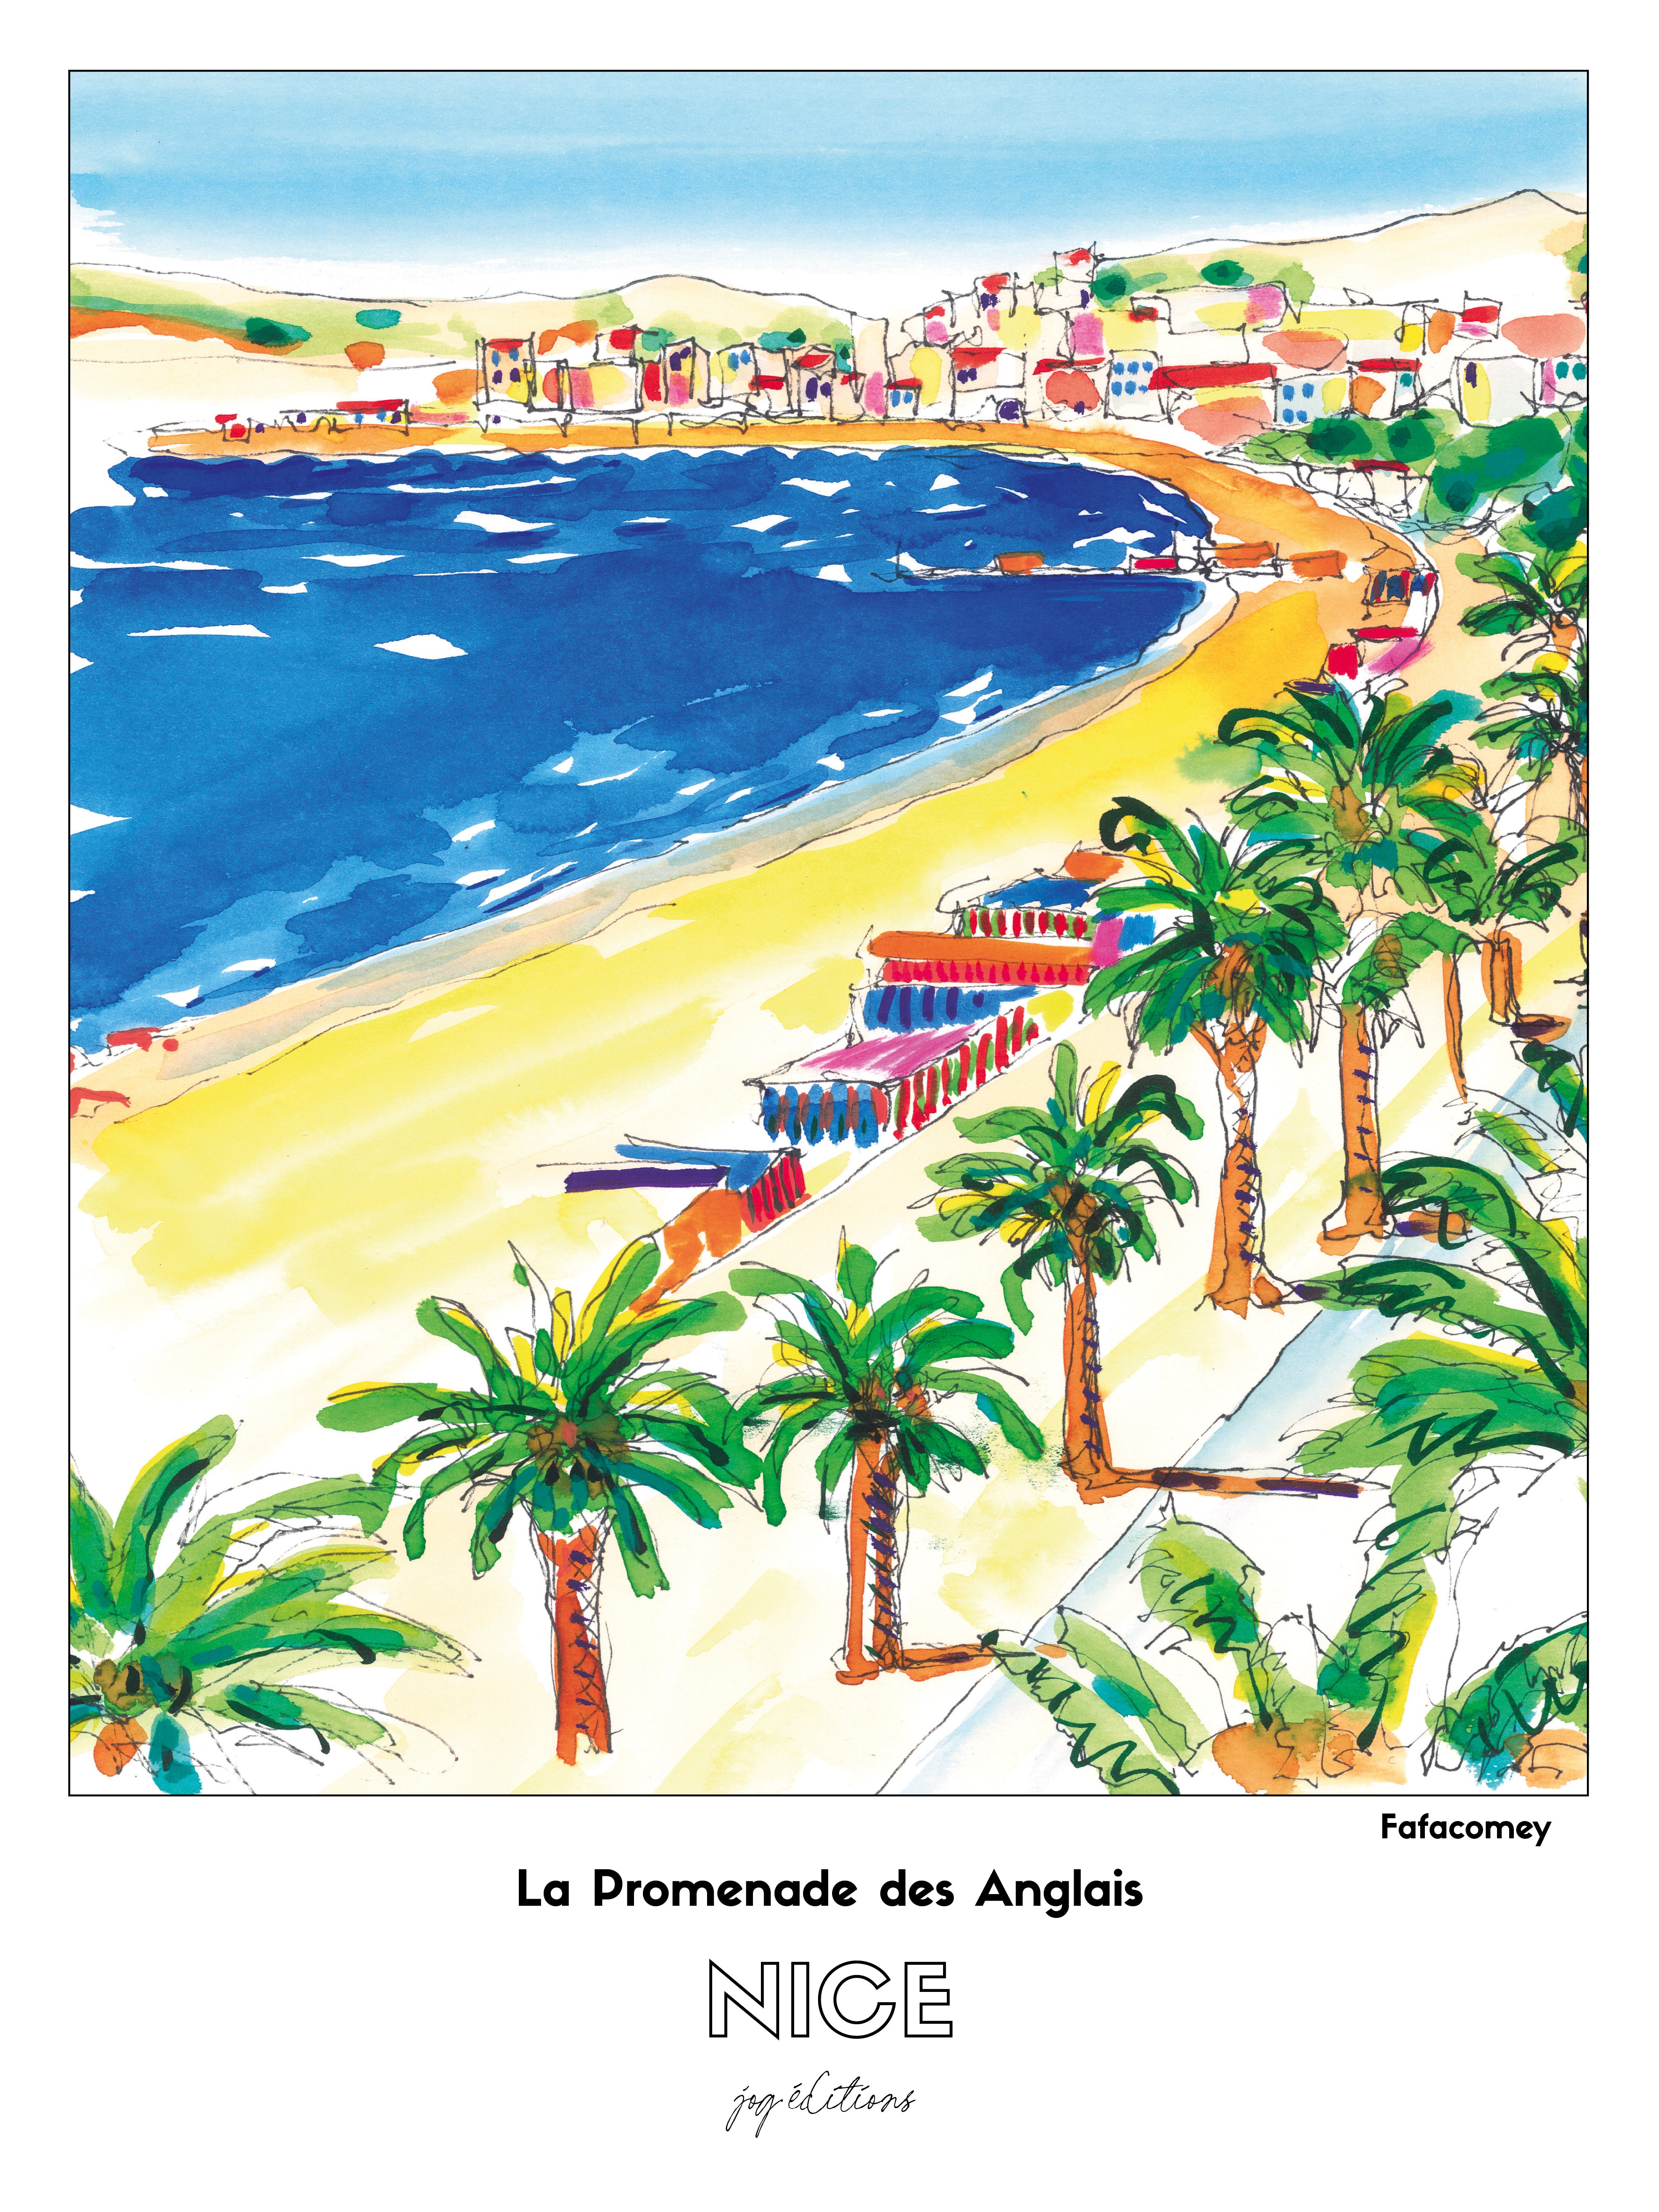 Affiche - Fafacomey - Nice - Promenade de Anglais